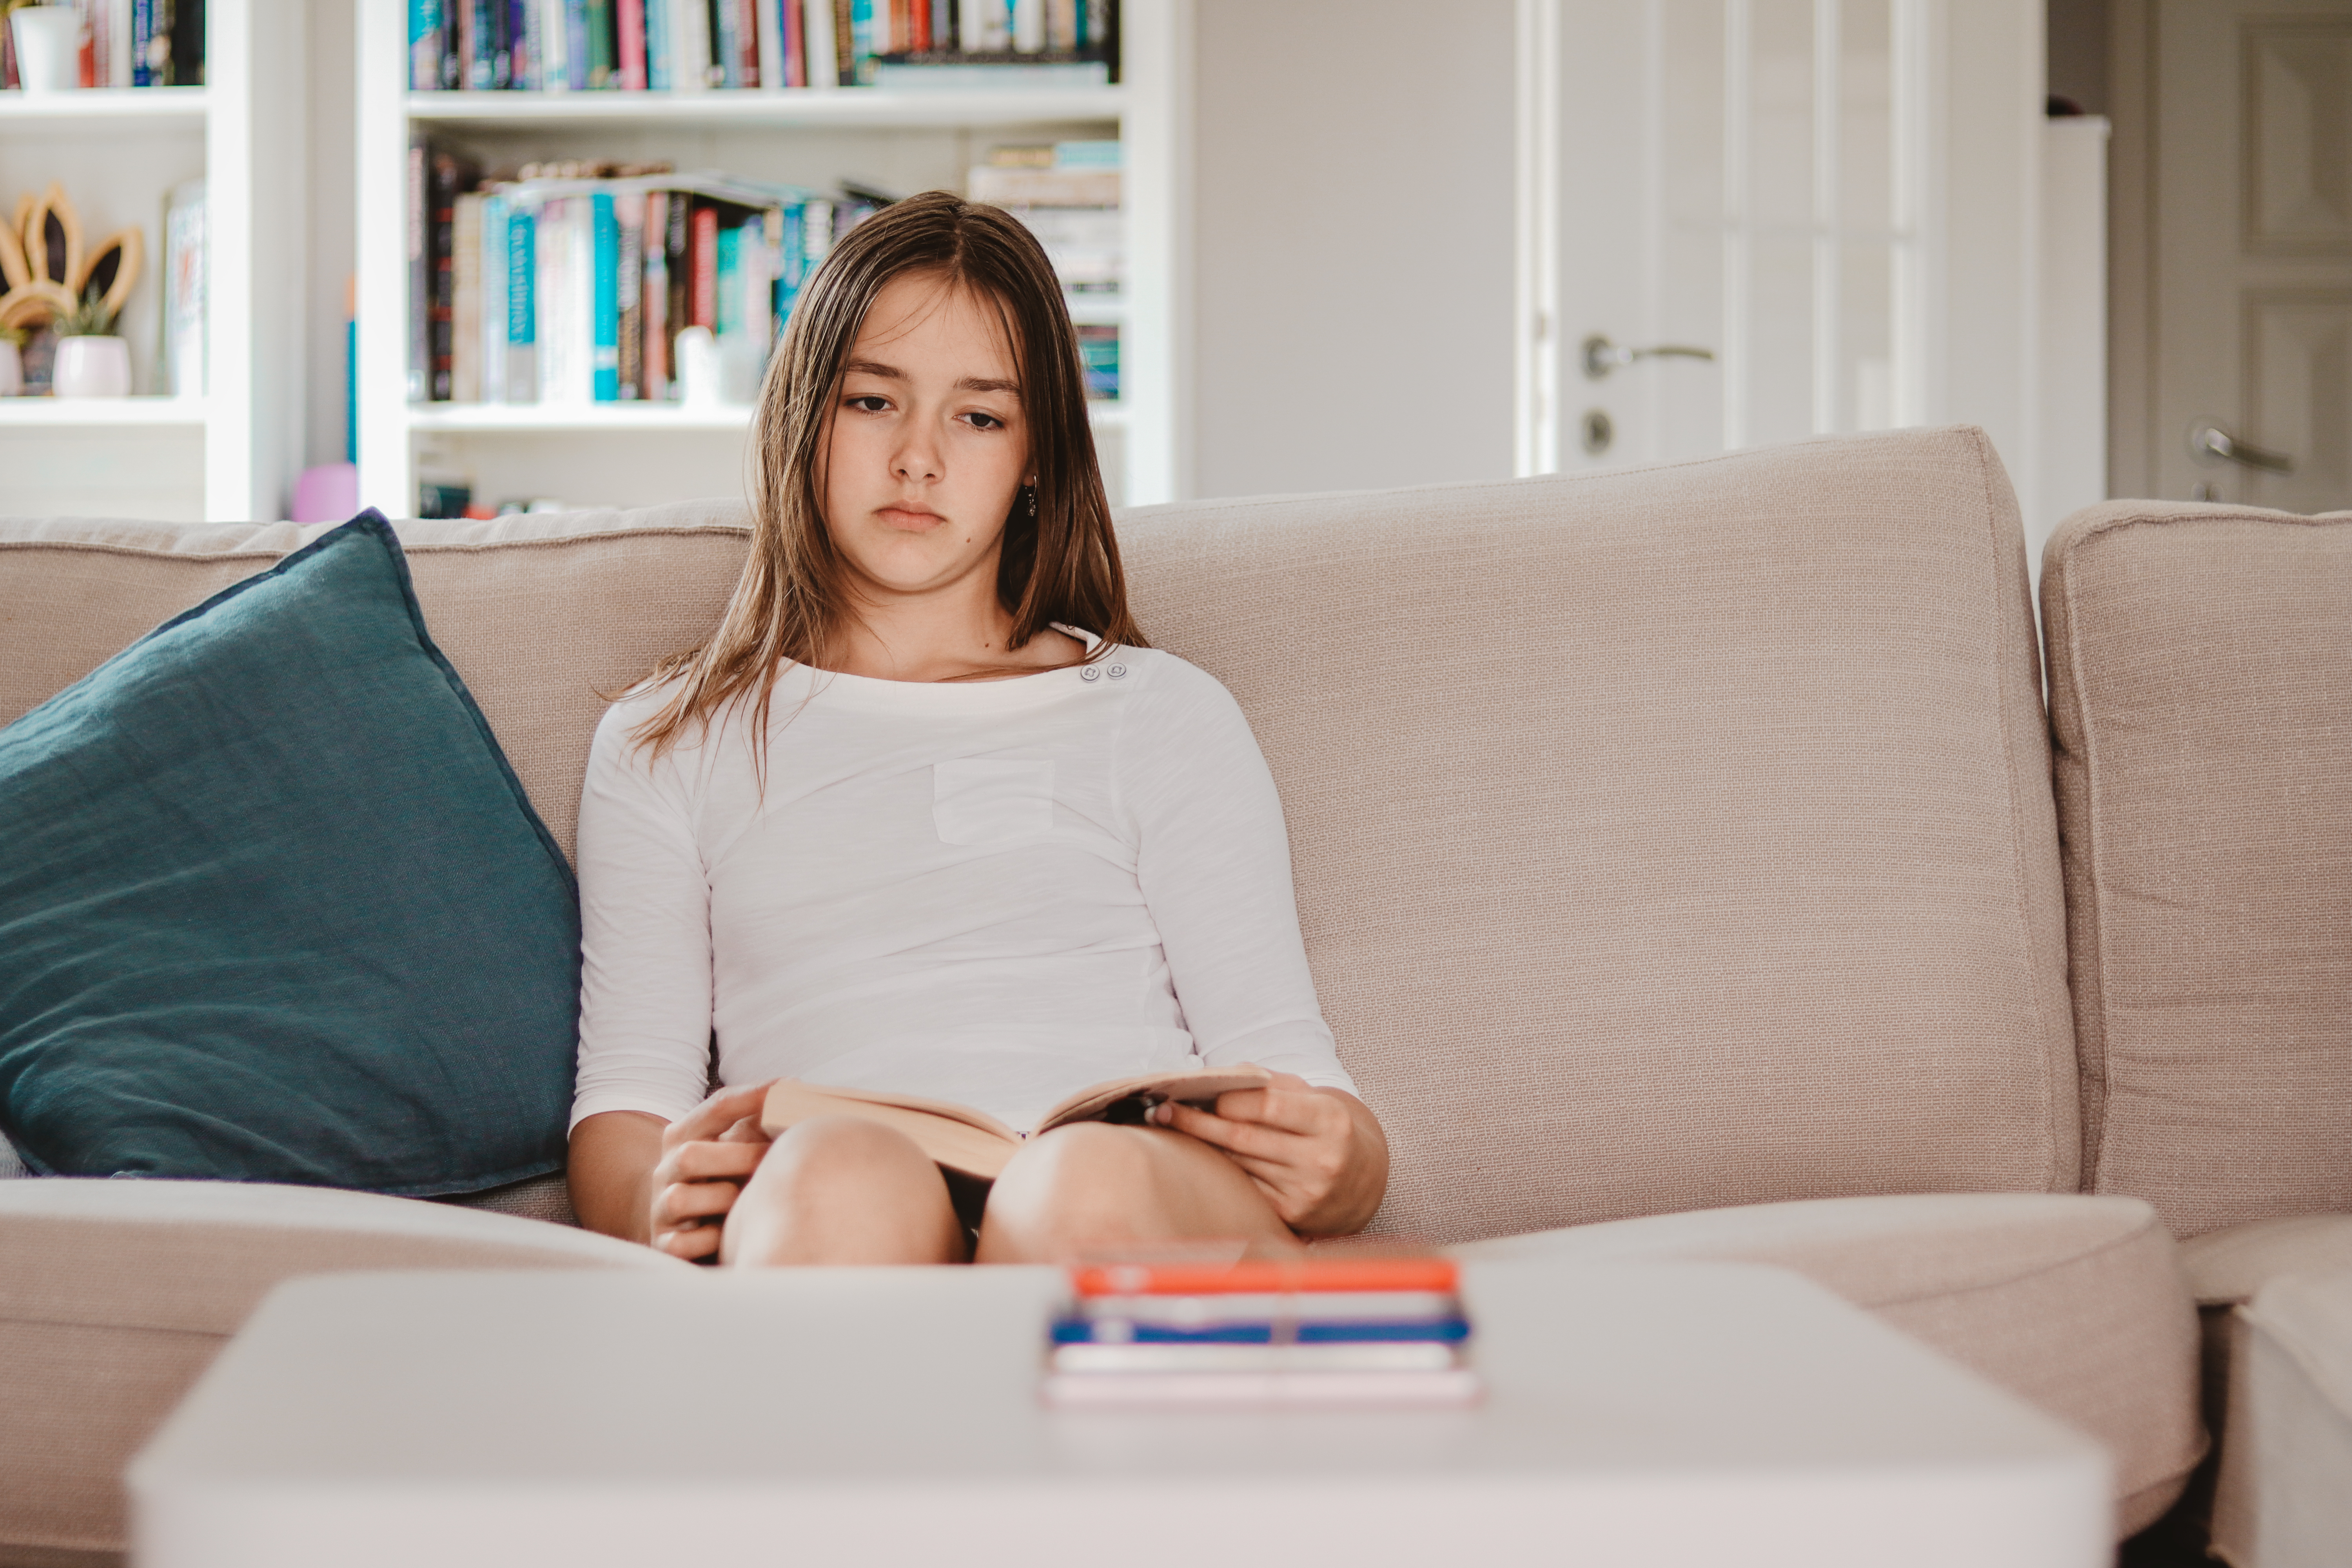 Une jeune fille assise sur un canapé, l'air triste | Source : Shutterstock